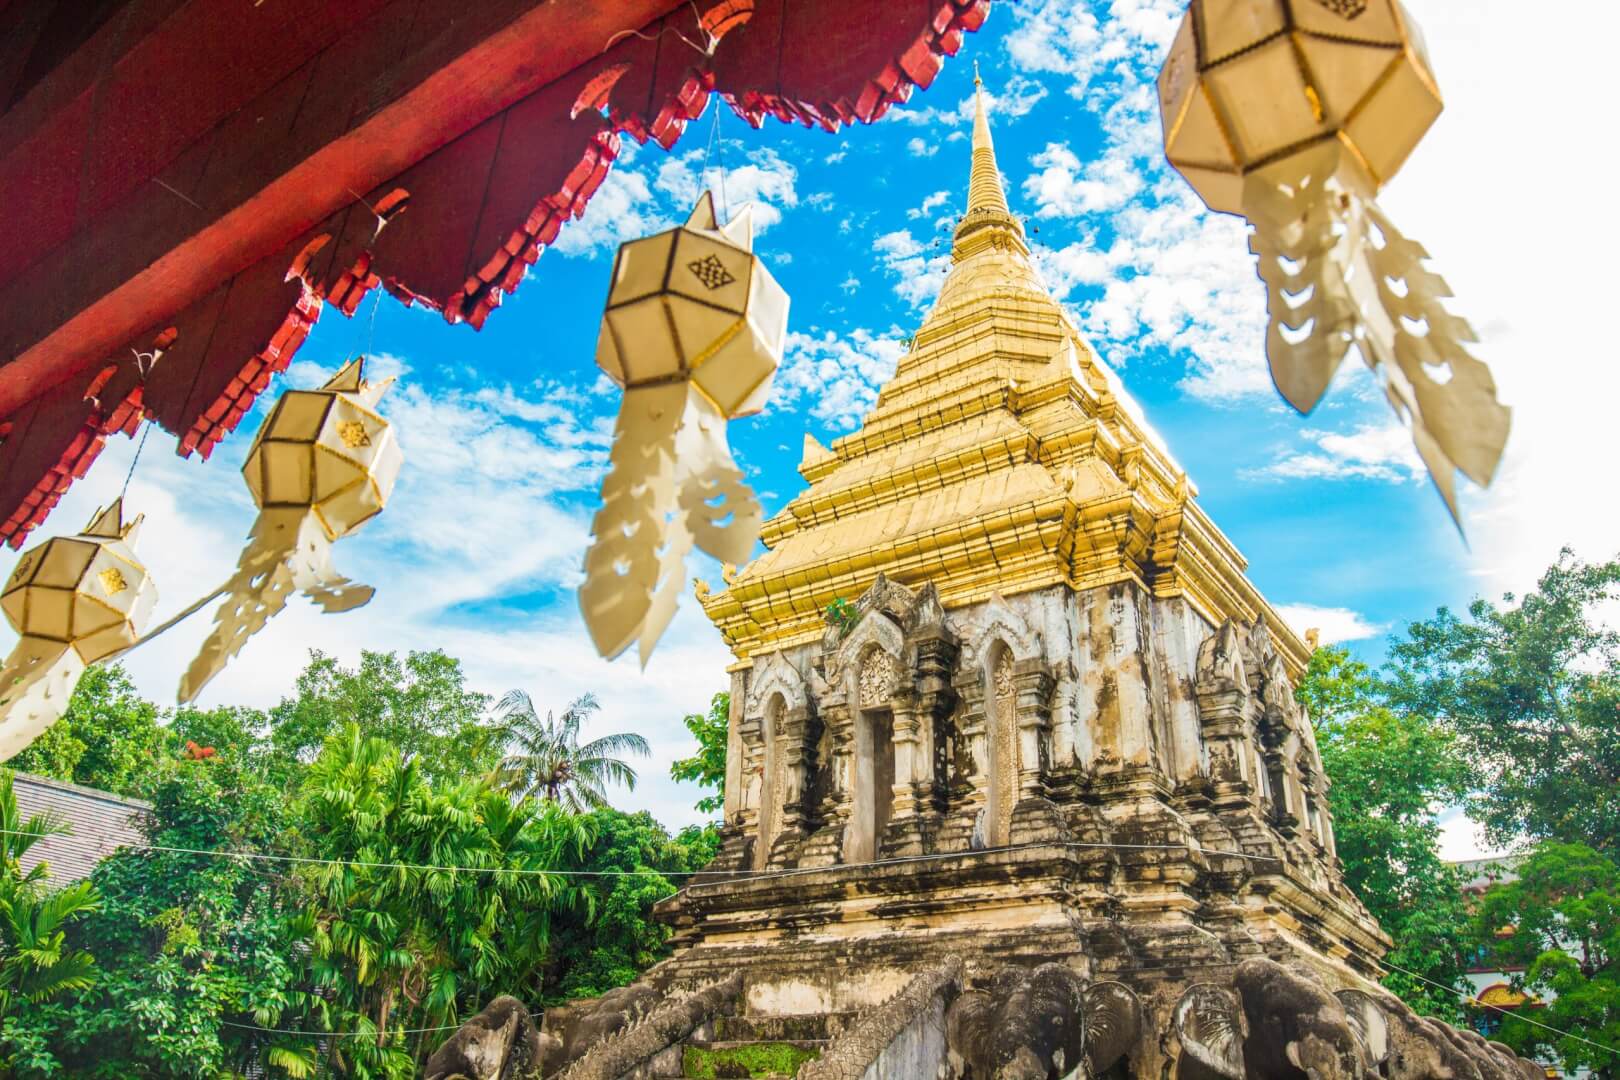 Construção tailandesa antiga, em branco e dourado. Imagem disponível em Unsplash. 